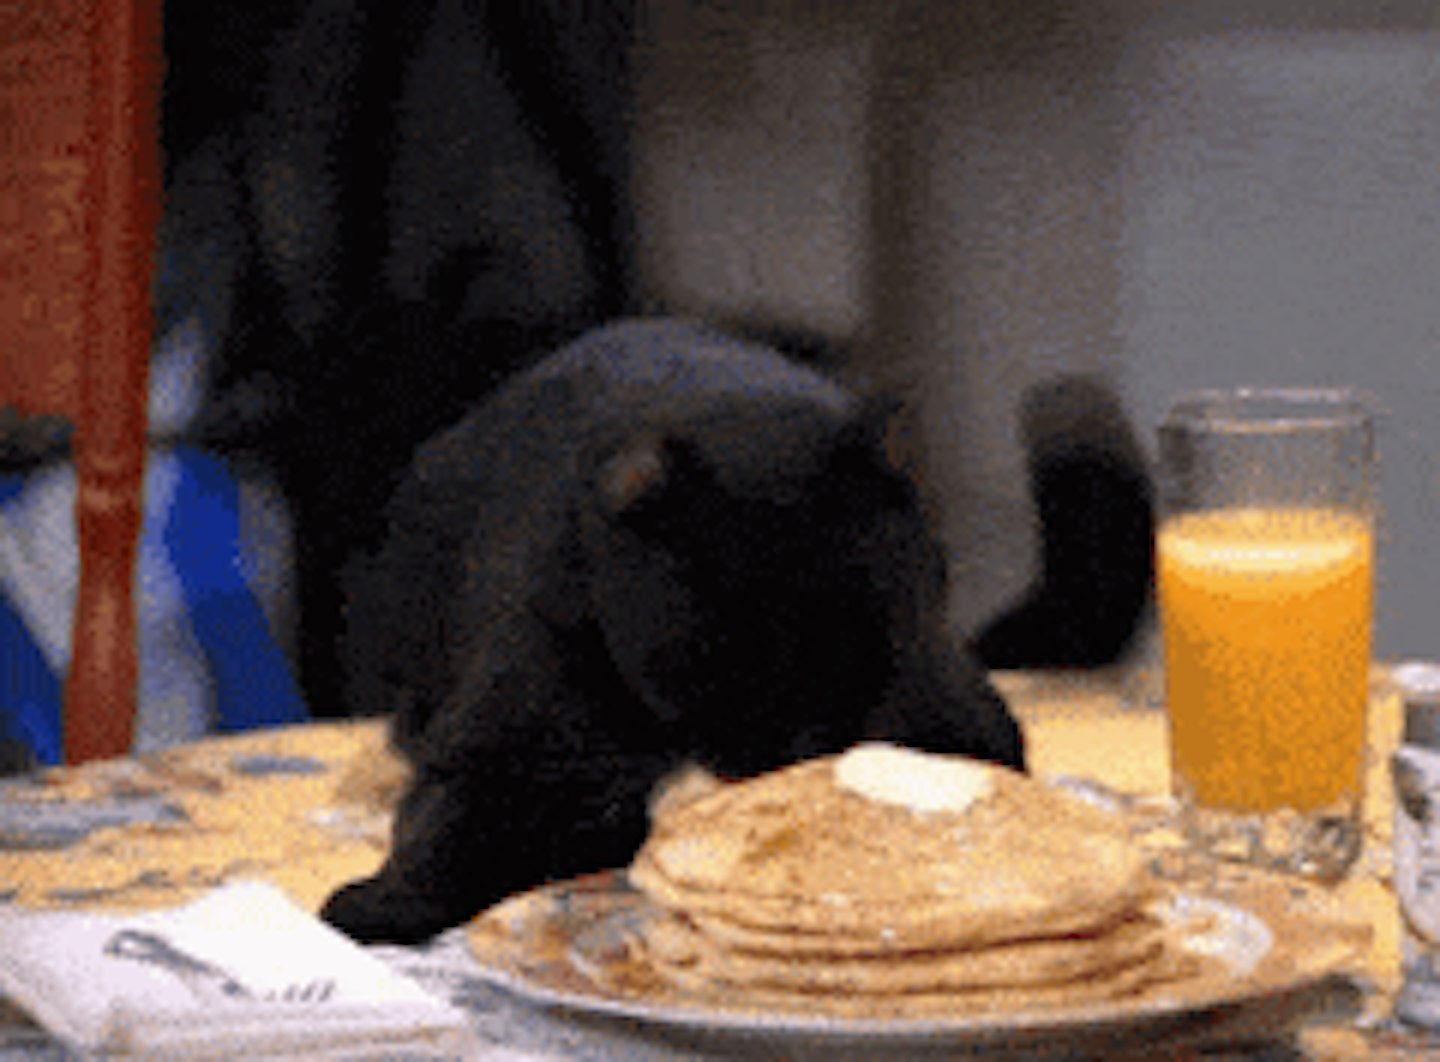 pancake day gif